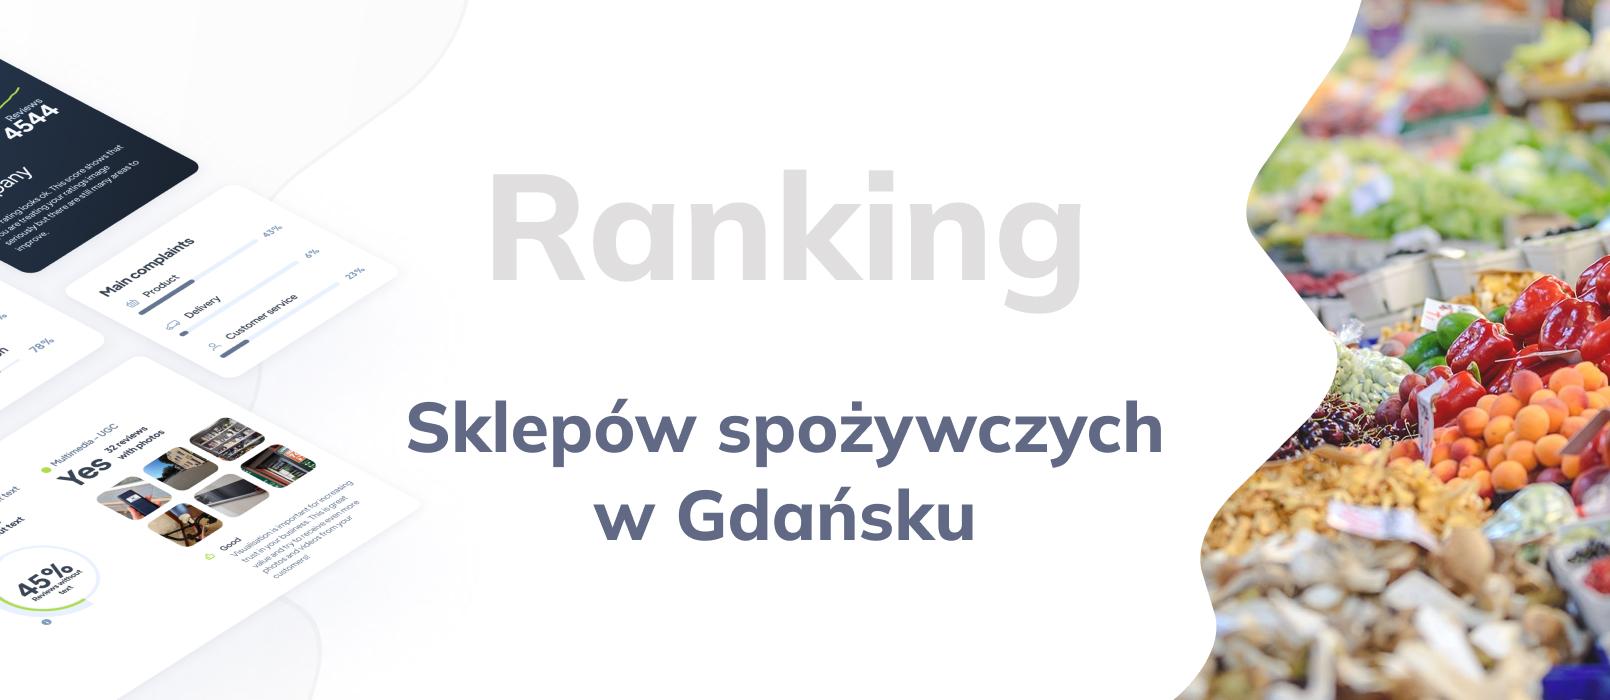 Sklep spożywczy w Gdańsku - ranking TOP 10